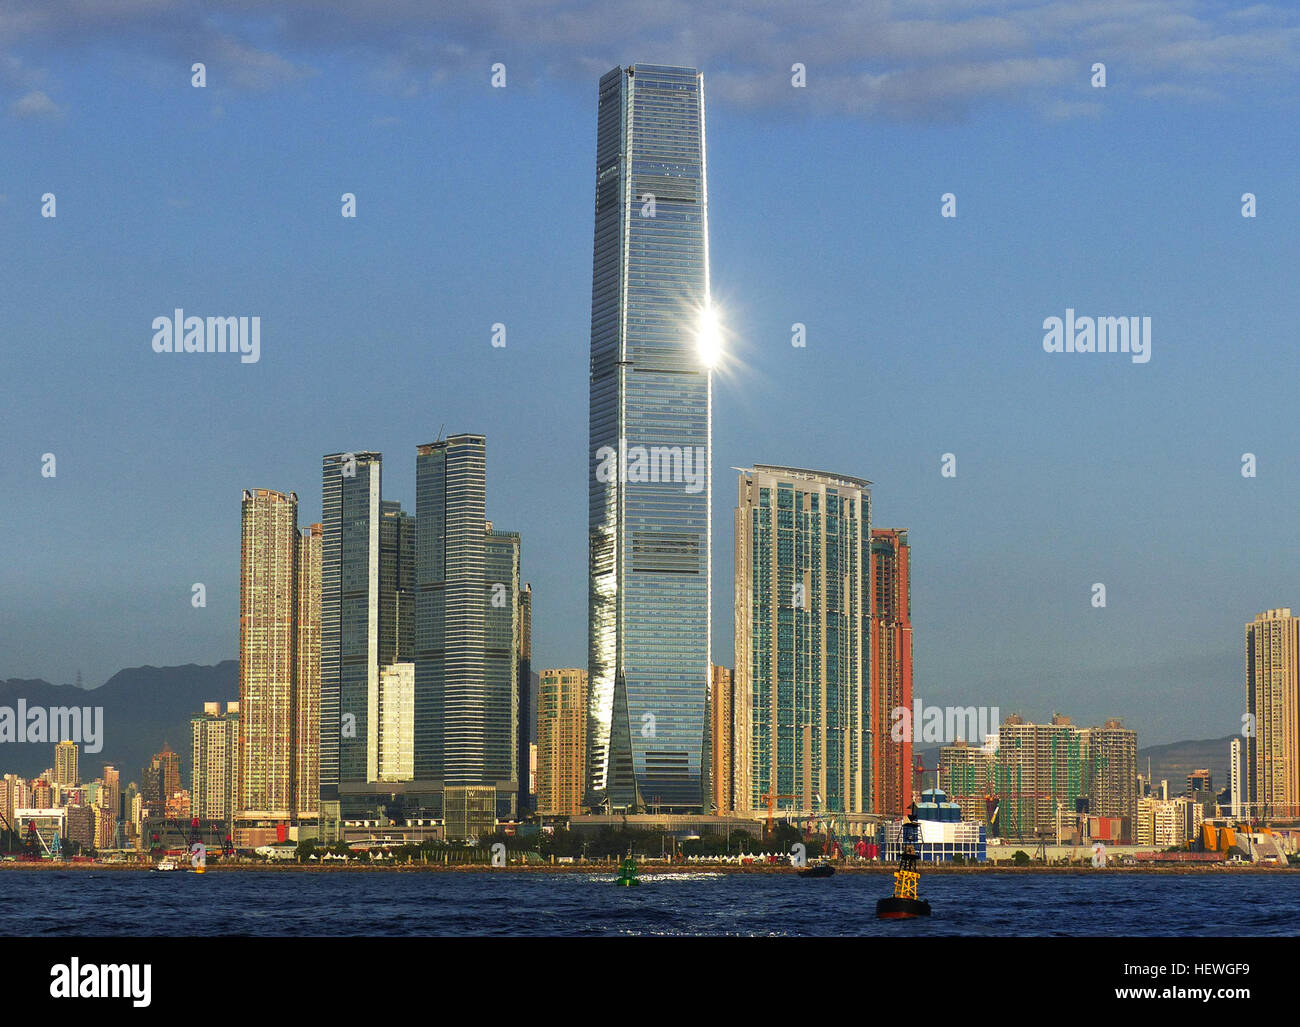 Le Hong Kong International commerce center (en abrégé. Tour ICC) est une 118 étages (1 588 m 484 ft) gratte-ciel commerciaux réalisés en 2010 dans l'Ouest de Kowloon, Hong Kong. C'est une partie de l'Union Square construit au-dessus de la gare de Kowloon. En 2014, il est le huitième plus grand bâtiment en hauteur, le troisième plus grand bâtiment en nombre d'étages, ainsi que le plus haut immeuble de Hong Kong. International commerce center par rapport à d'autres plus hauts immeubles de l'Asie. Parmi les notables, le Ritz-Carlton Hong Kong hôtel et un observatoire appelé Sky100. La CPI fait face à la tour se Banque D'Images